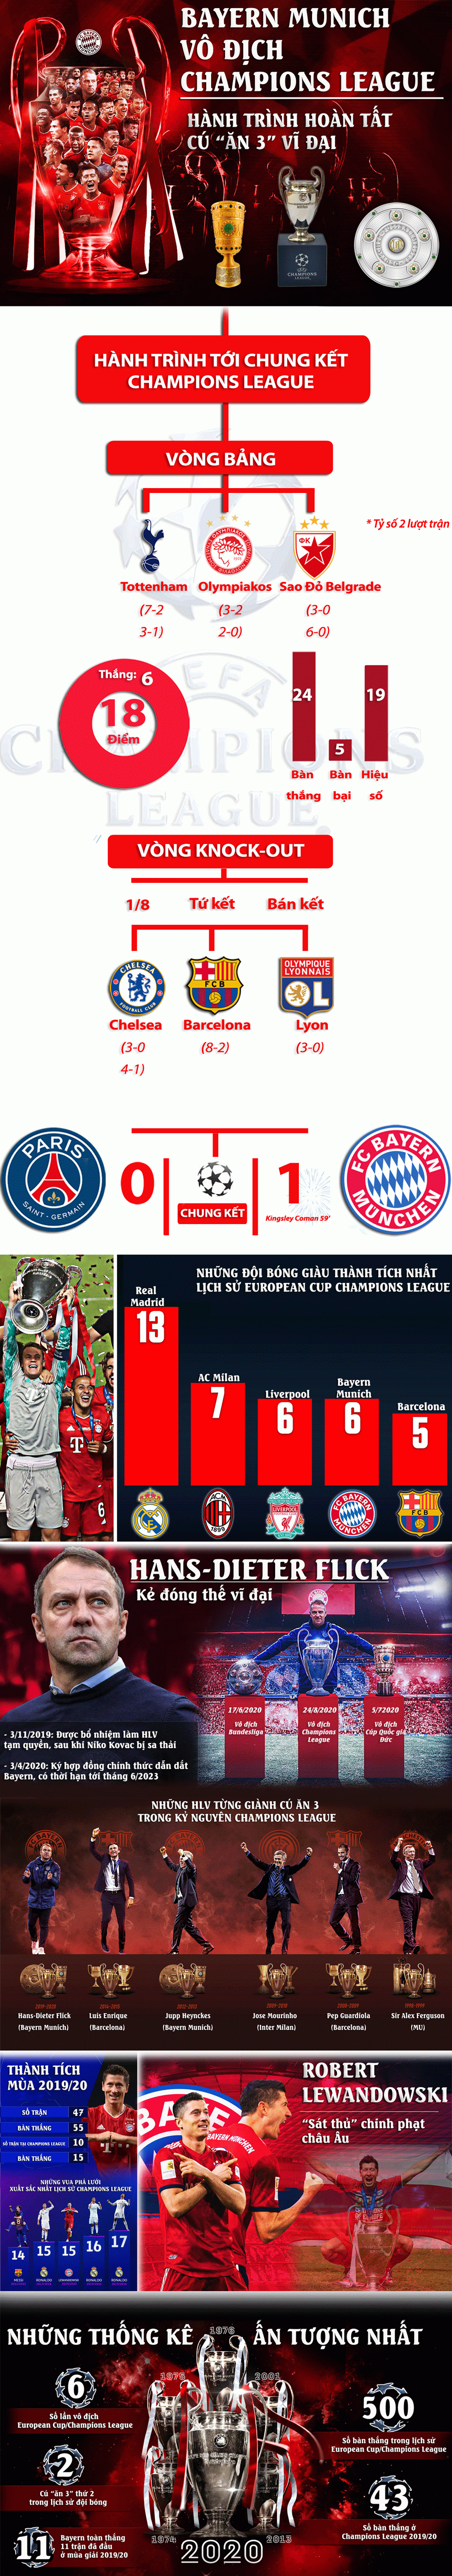 Bayern vô địch Cúp C1: &#34;Ăn 3&#34; vĩ đại, vua châu Âu chinh phục siêu kỳ tích - 1